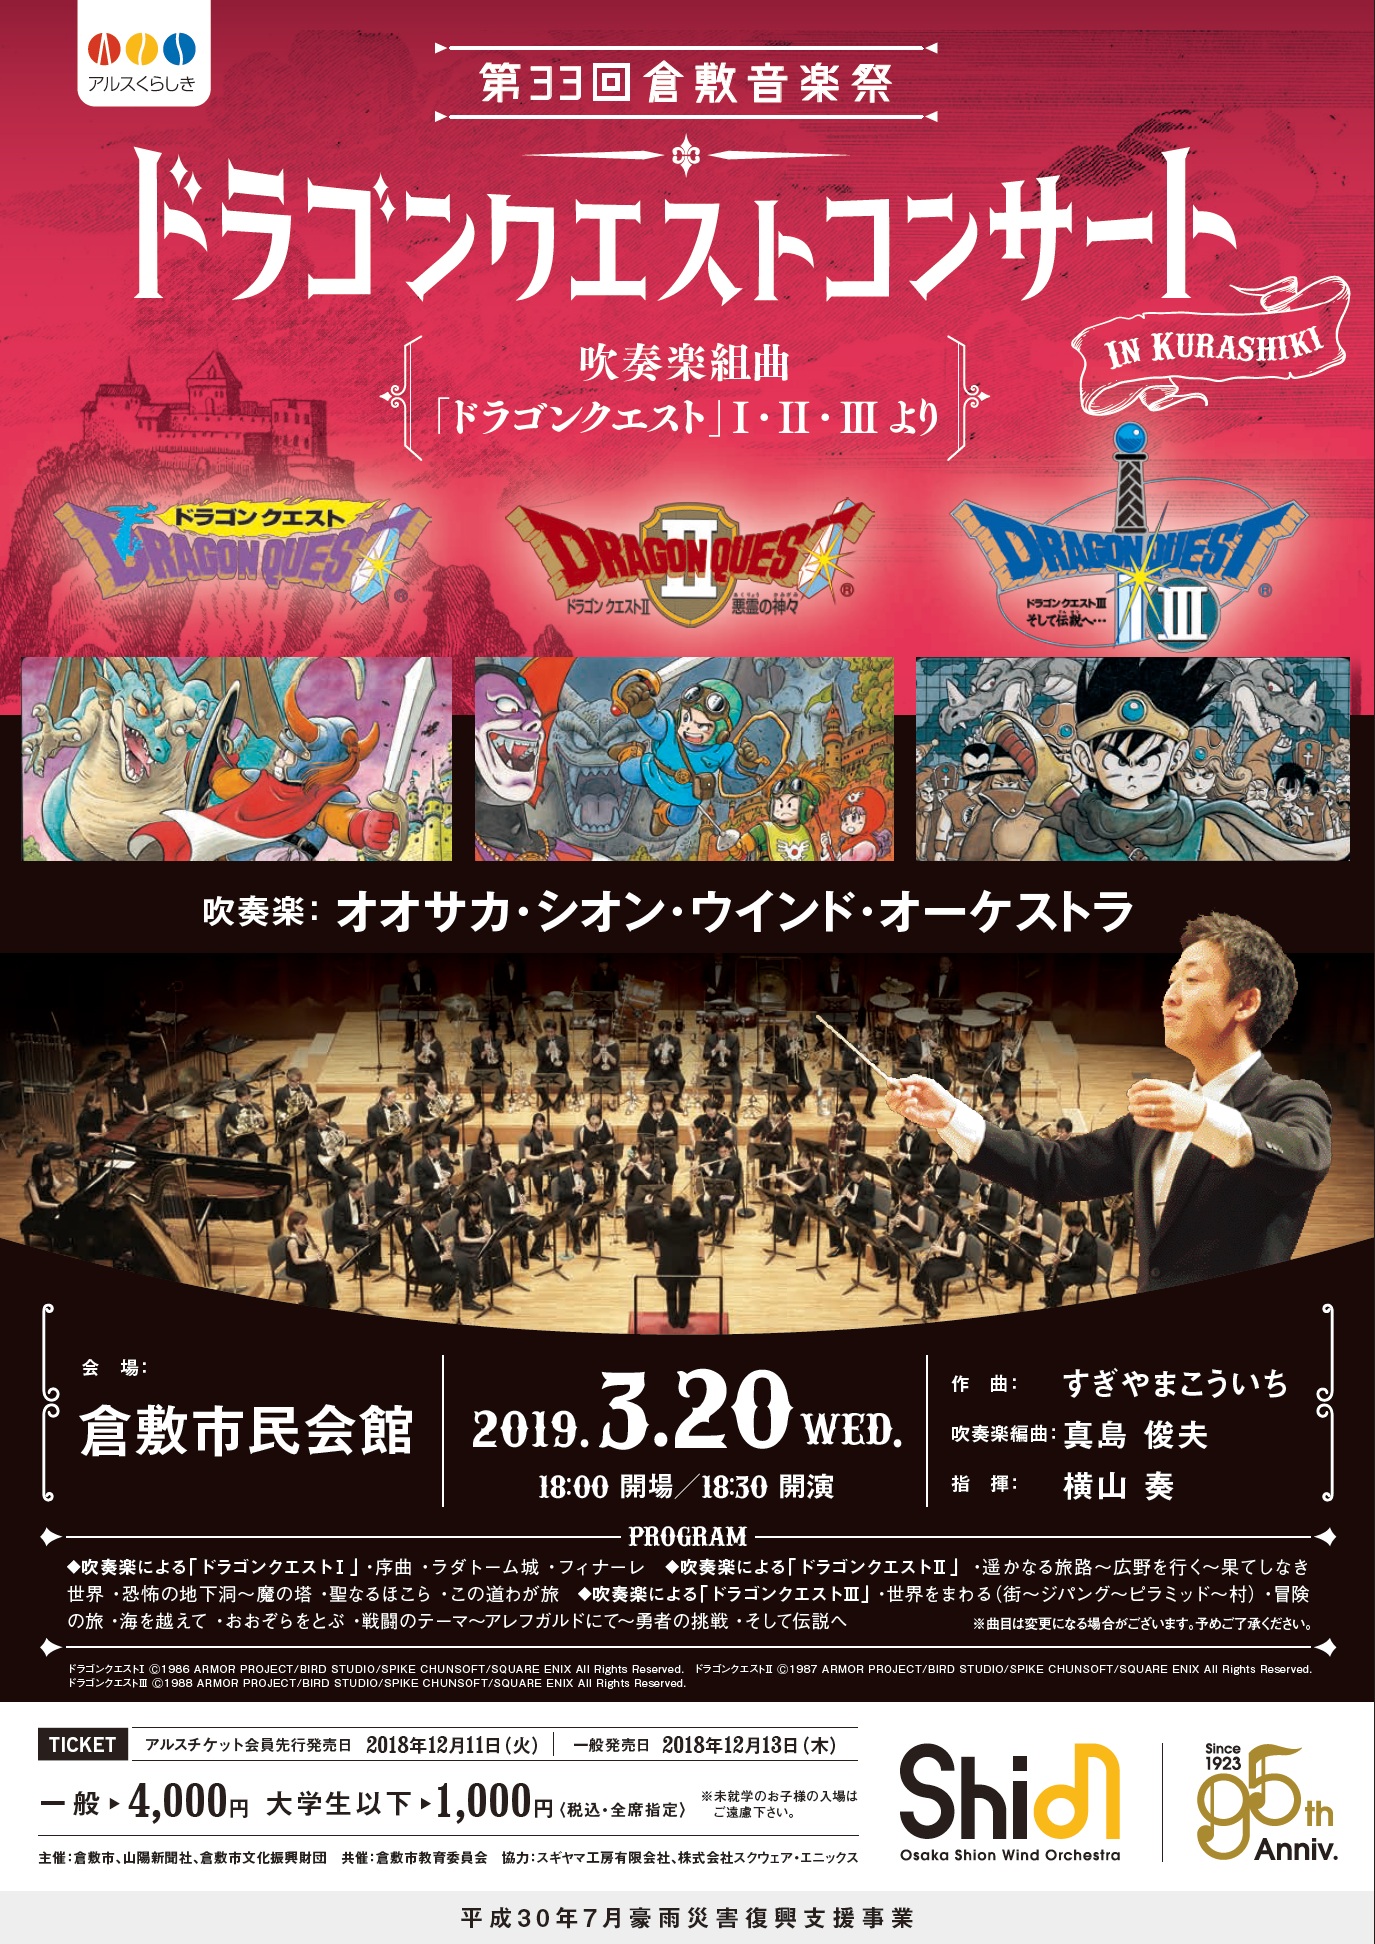 第３３回倉敷音楽祭 Osaka Shion Wind Orchestra ドラゴンクエストコンサート 公演 イベント 倉敷市民会館